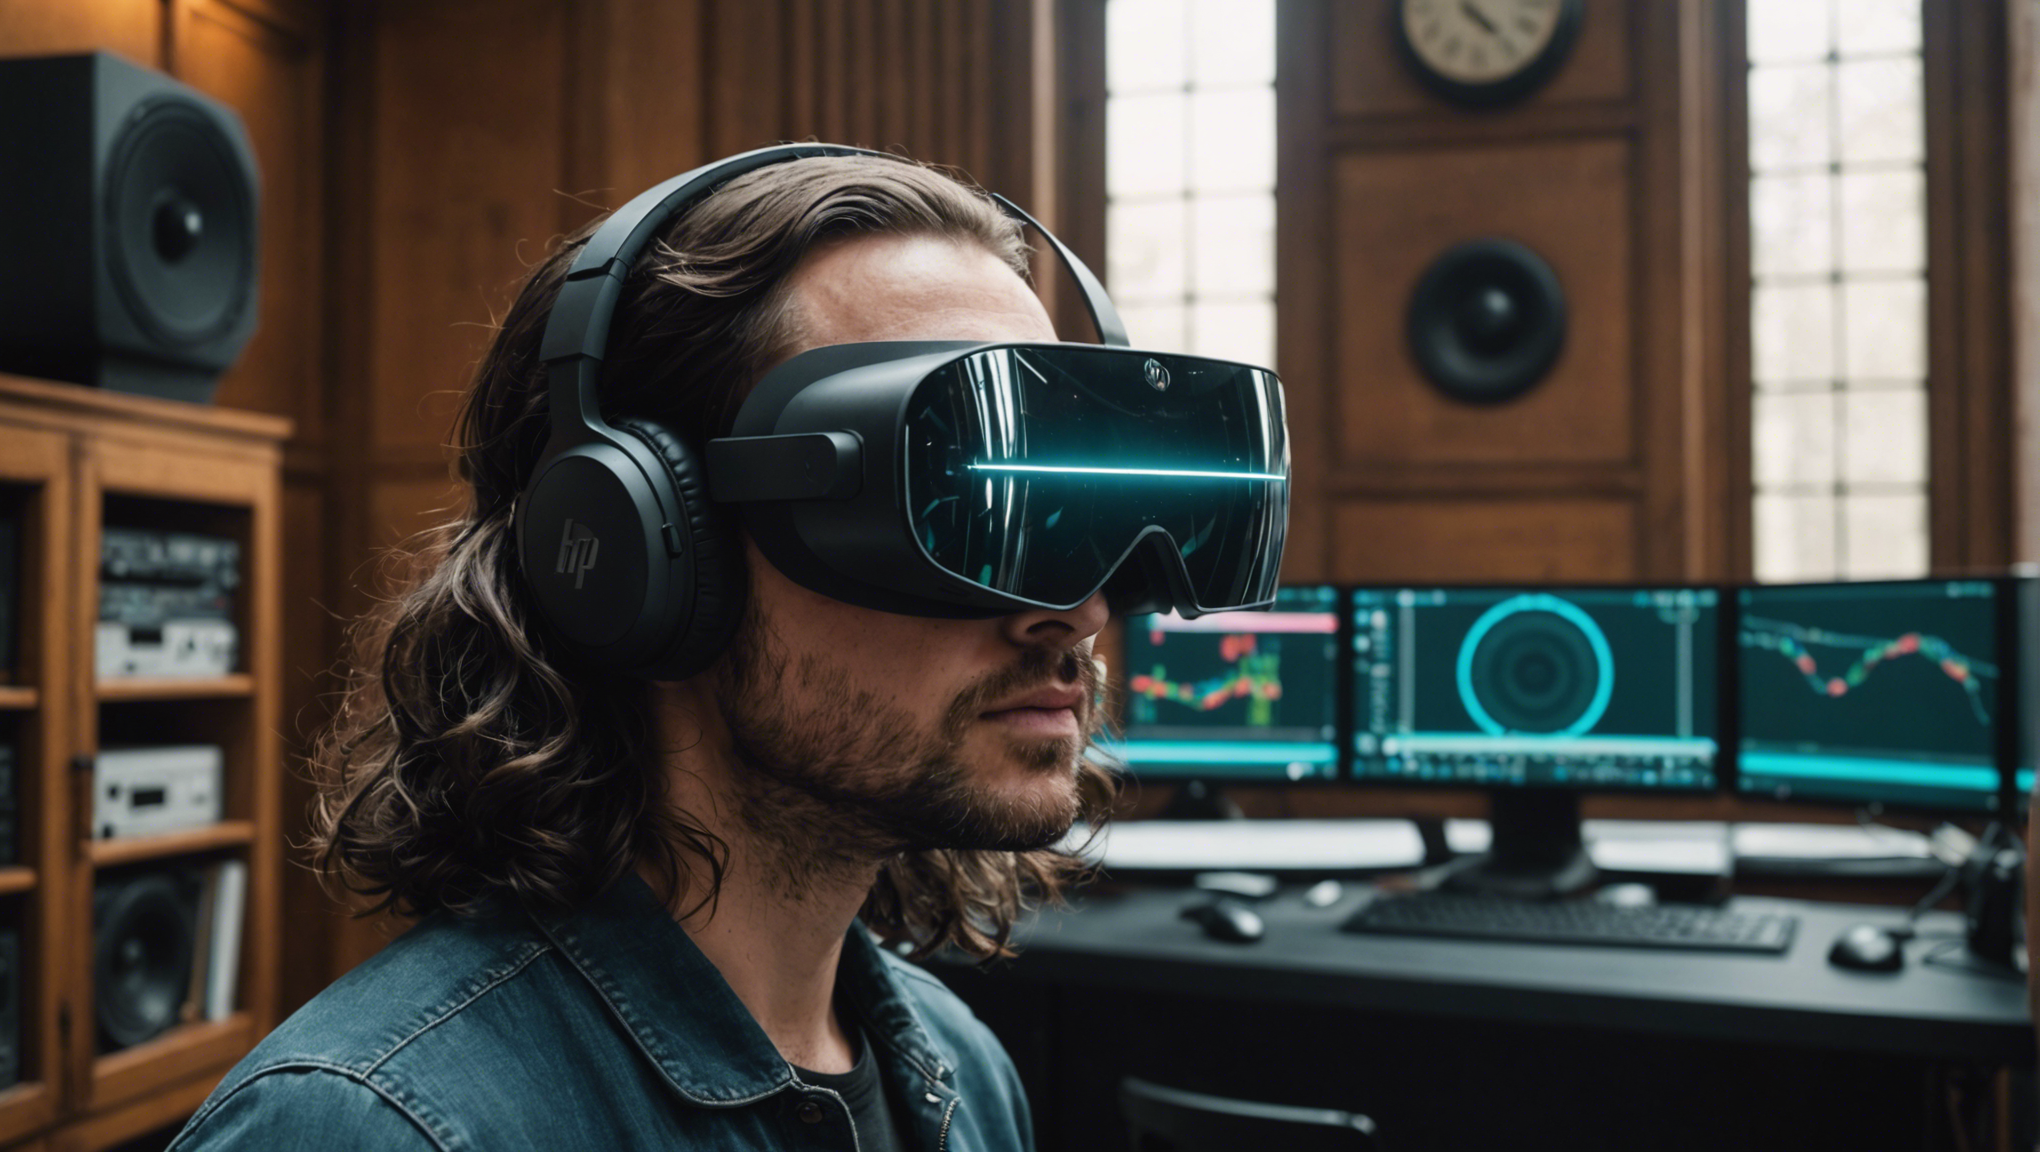 découvrez le hp reverb, le casque de réalité virtuelle qui repousse les limites de l'immersion. plongez dans une expérience visuelle ultra-réaliste avec ce bijou de technologie.